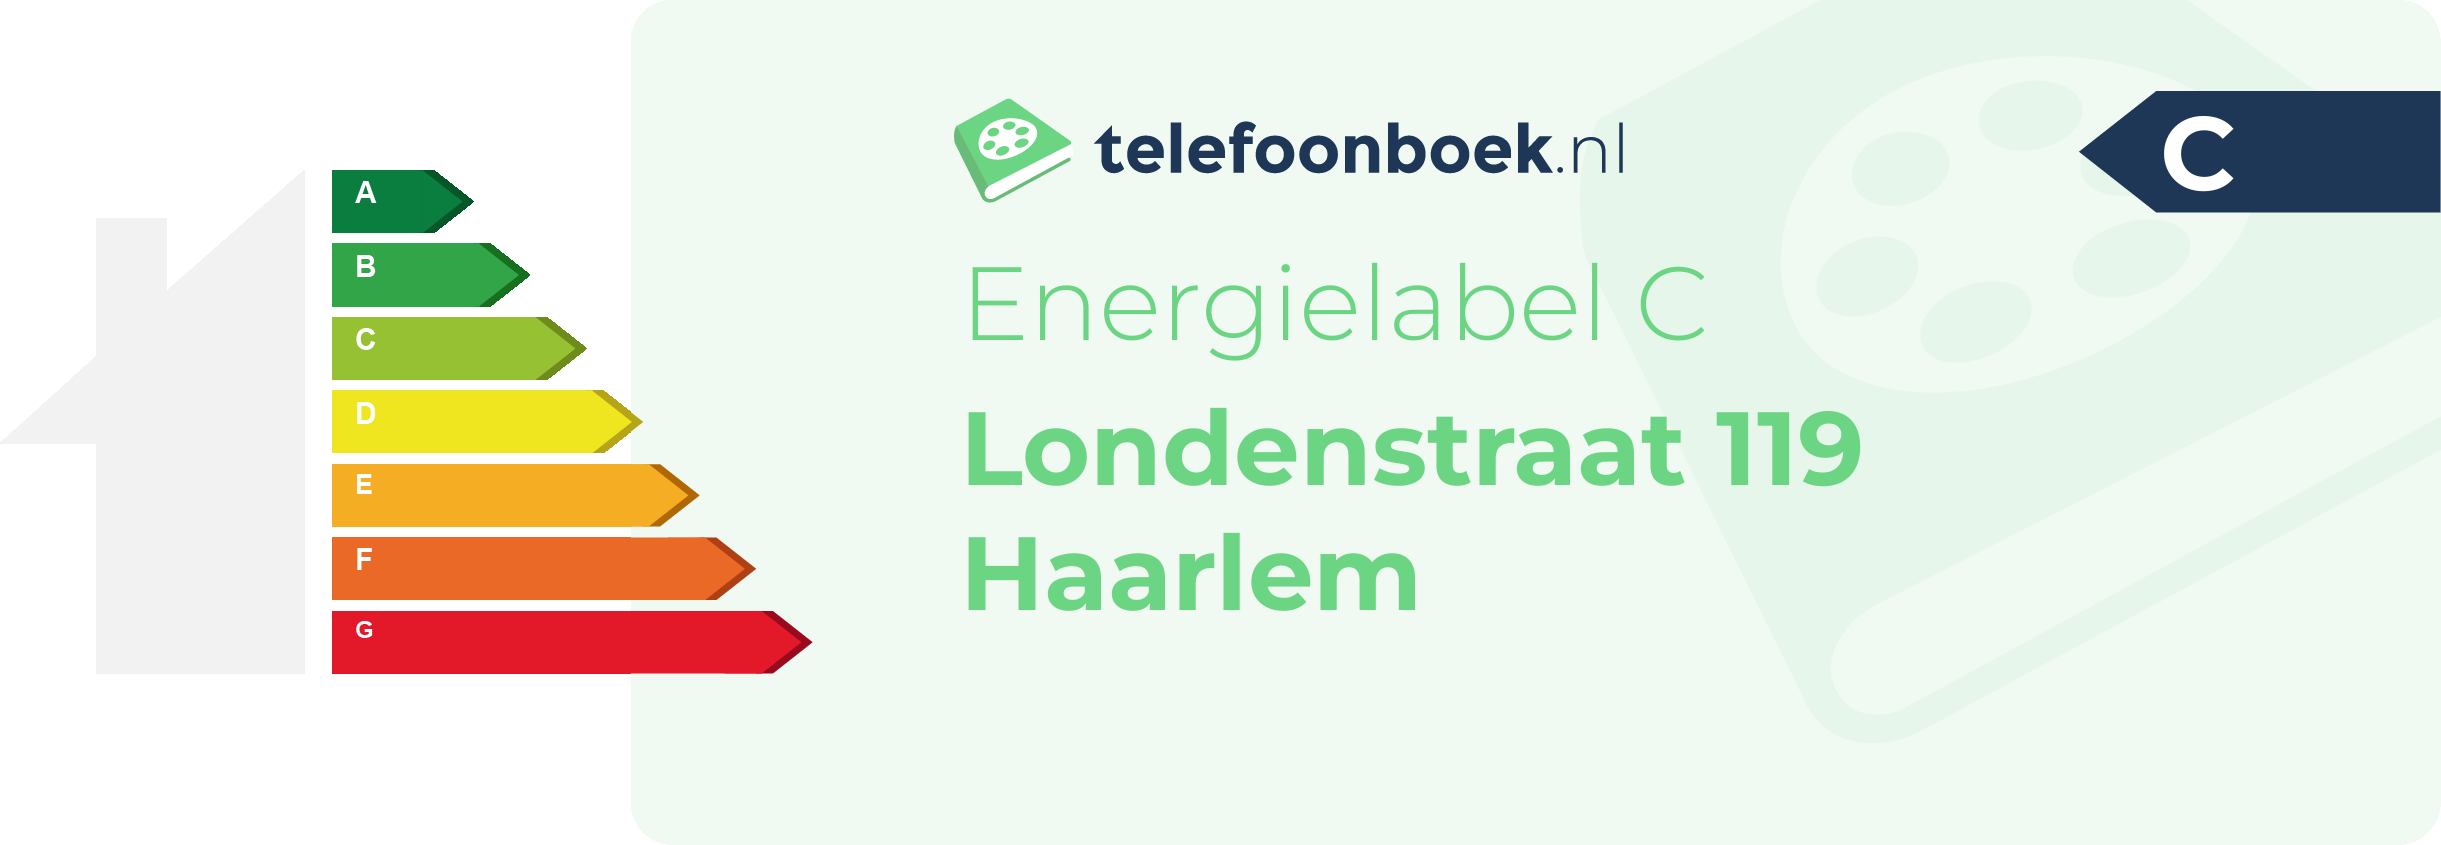 Energielabel Londenstraat 119 Haarlem